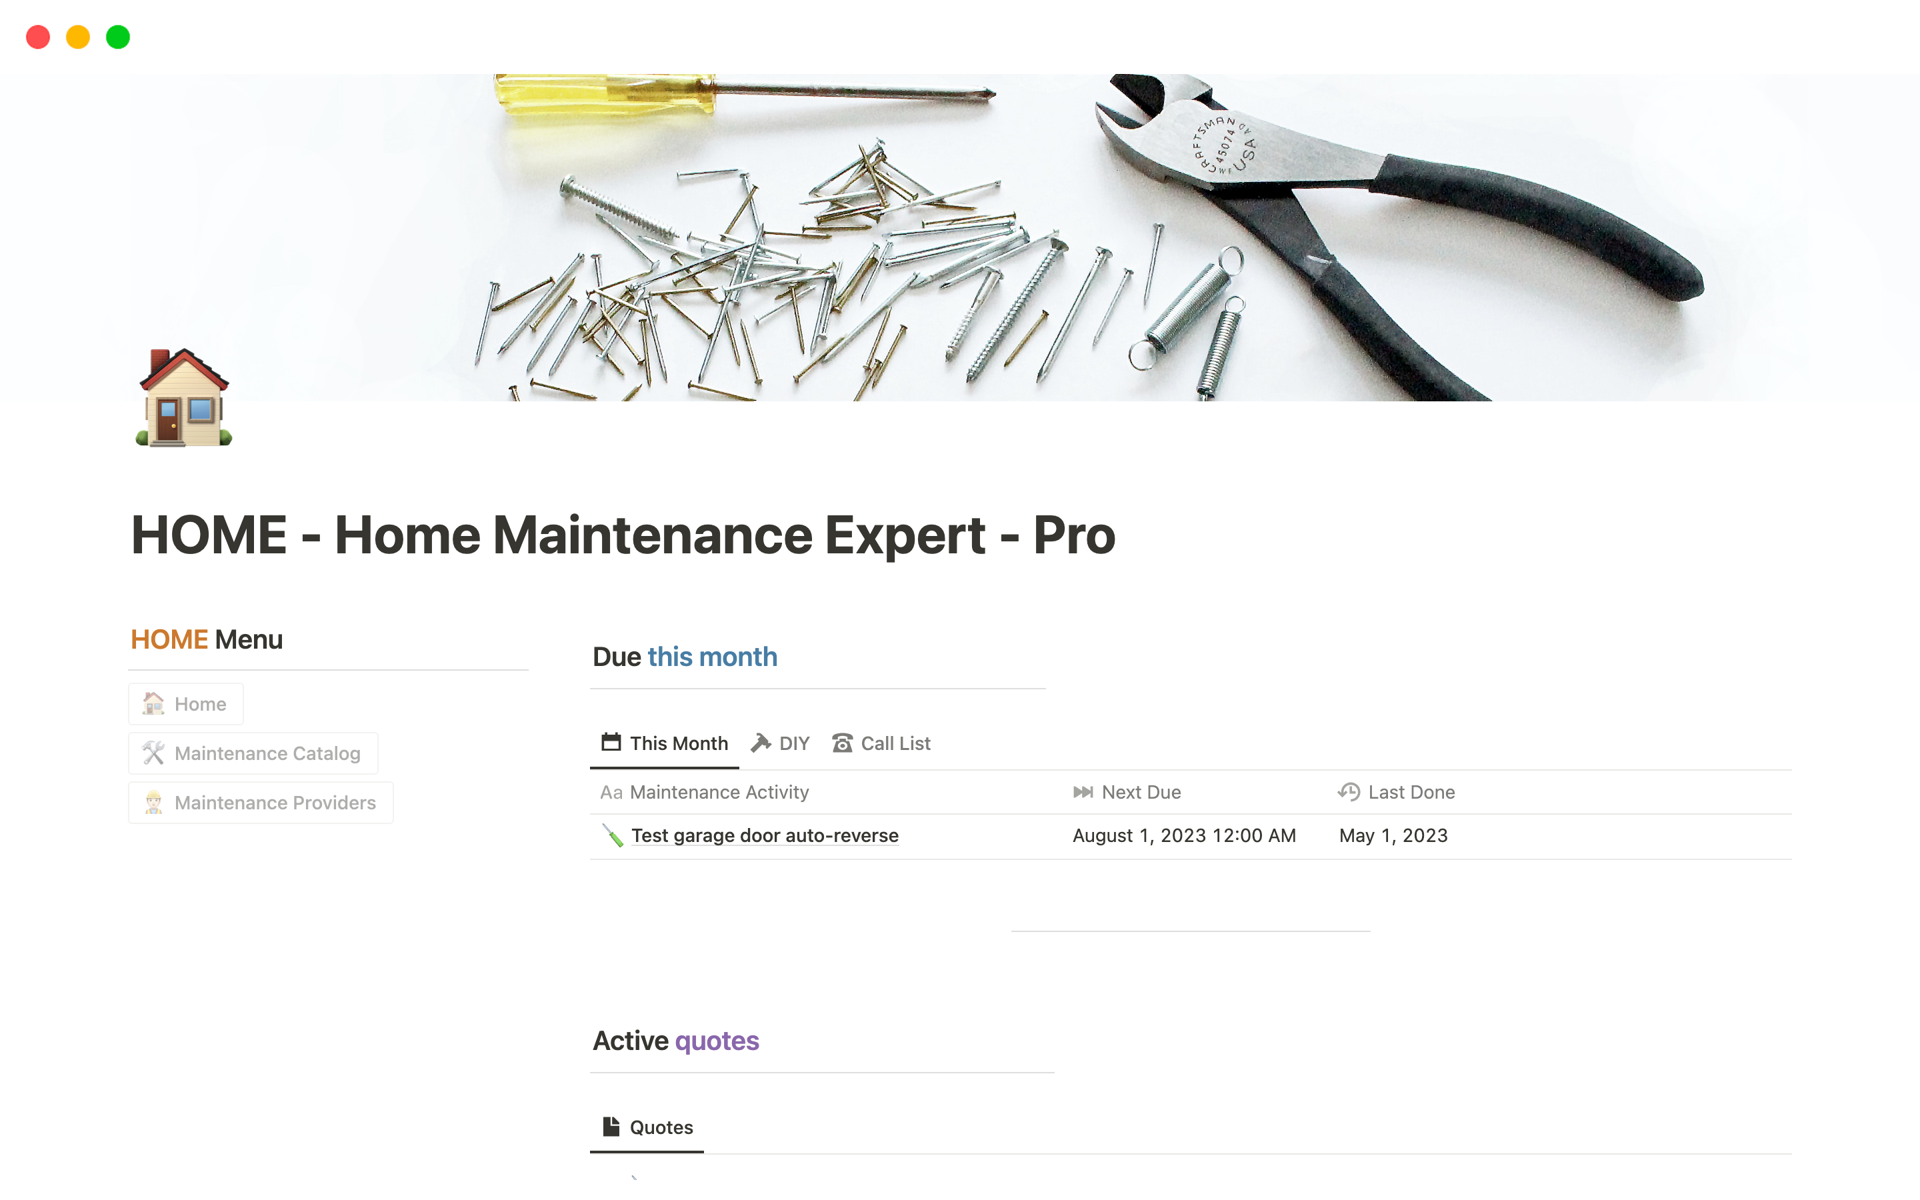 Aperçu du modèle de HOME - Home Maintenance Expert - Pro